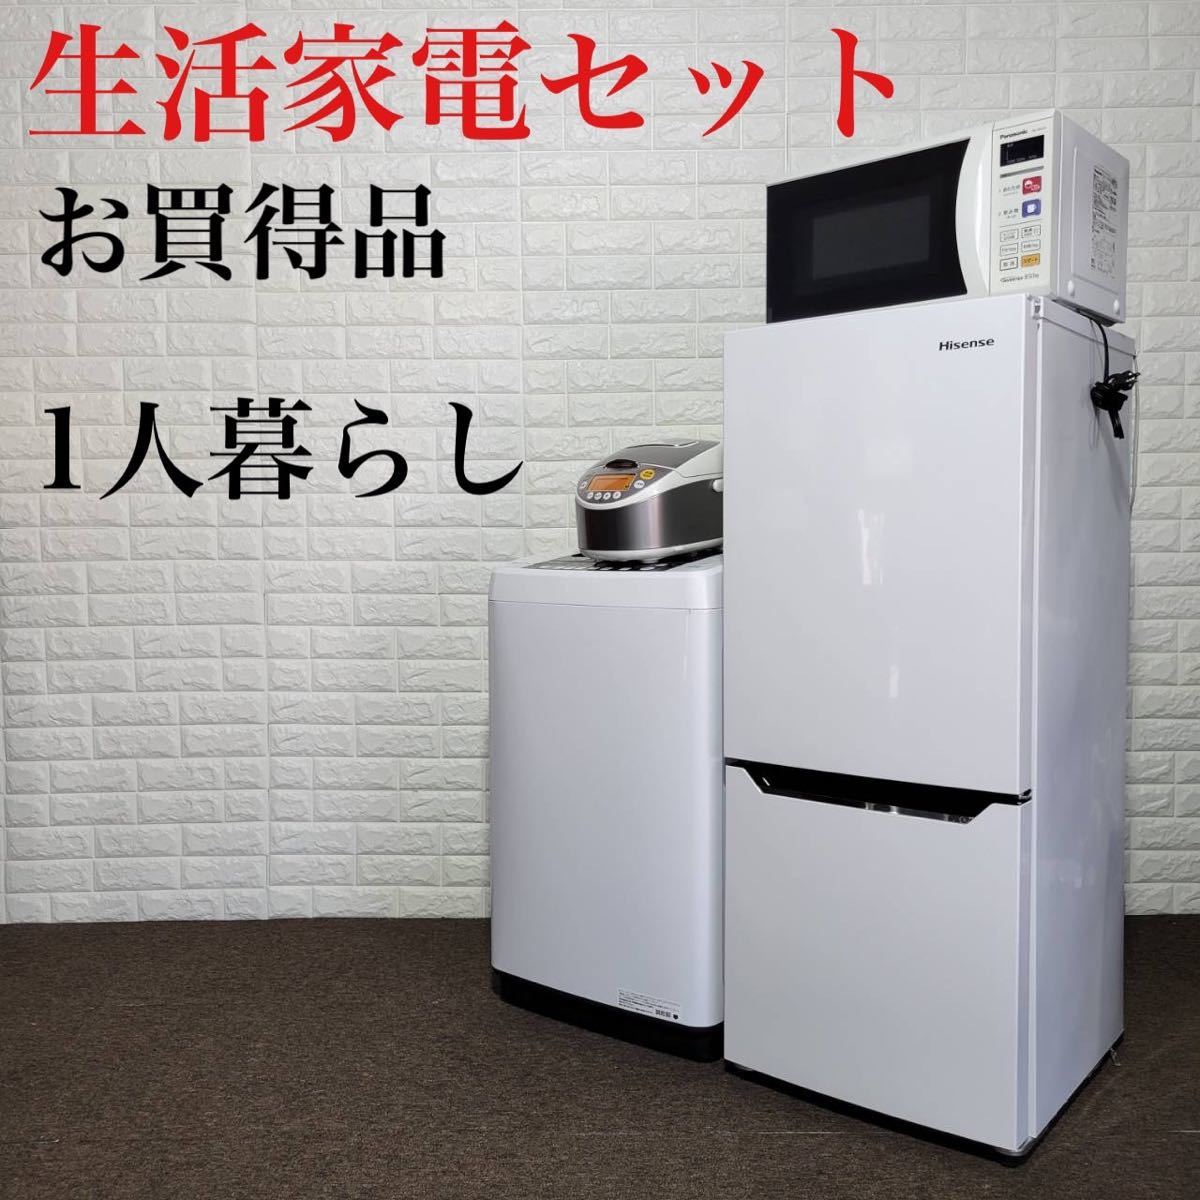 生活家電セット 冷蔵庫 洗濯機 電子レンジ 炊飯器 1人暮らし k0206-